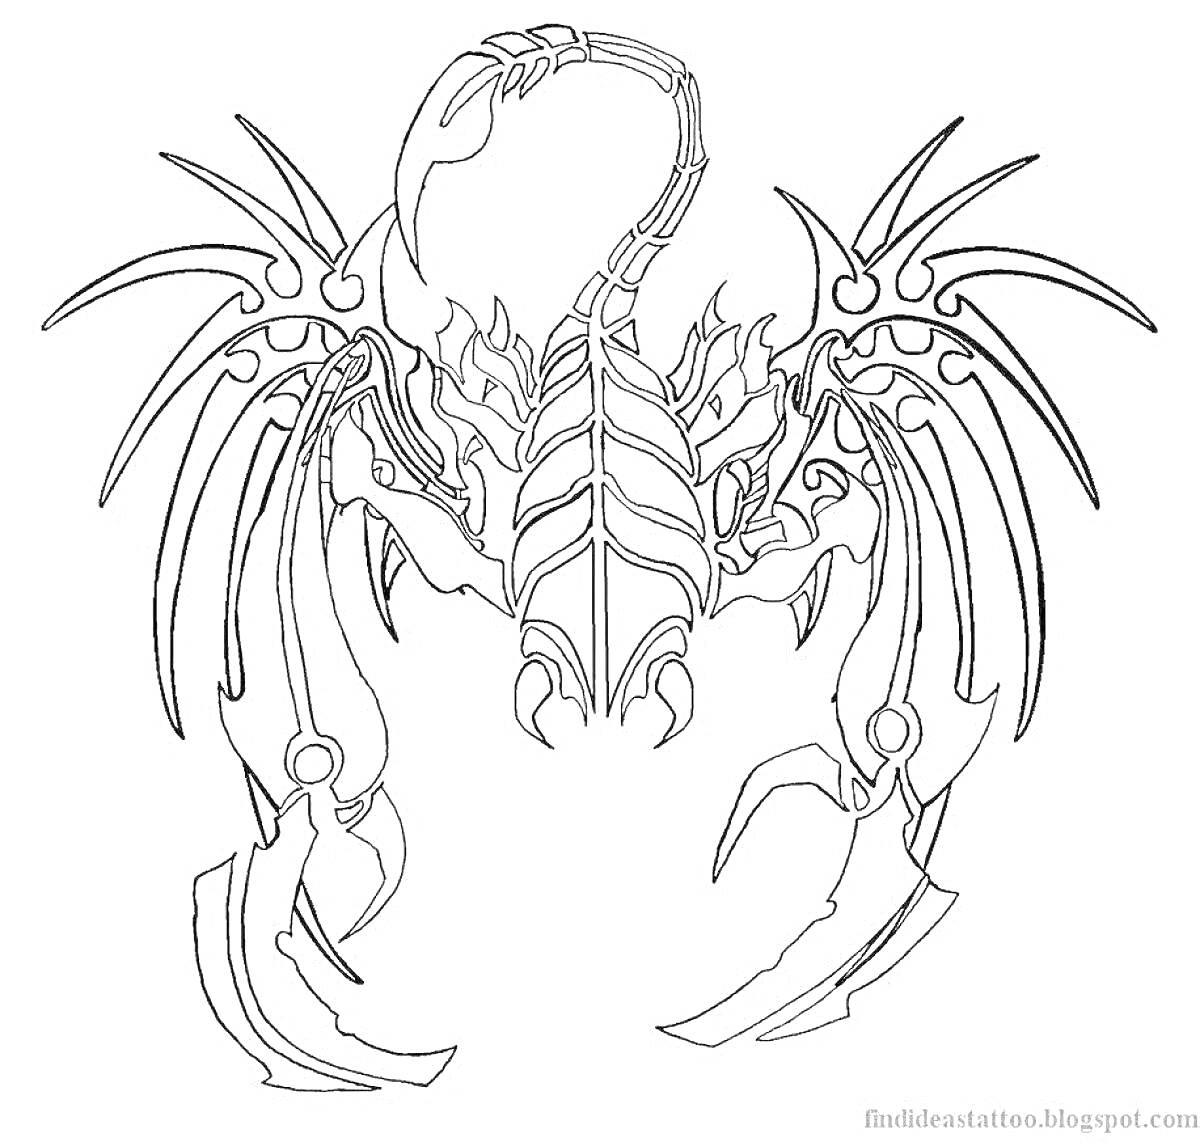 Скорпион с декоративными элементами и изогнутым хвостом